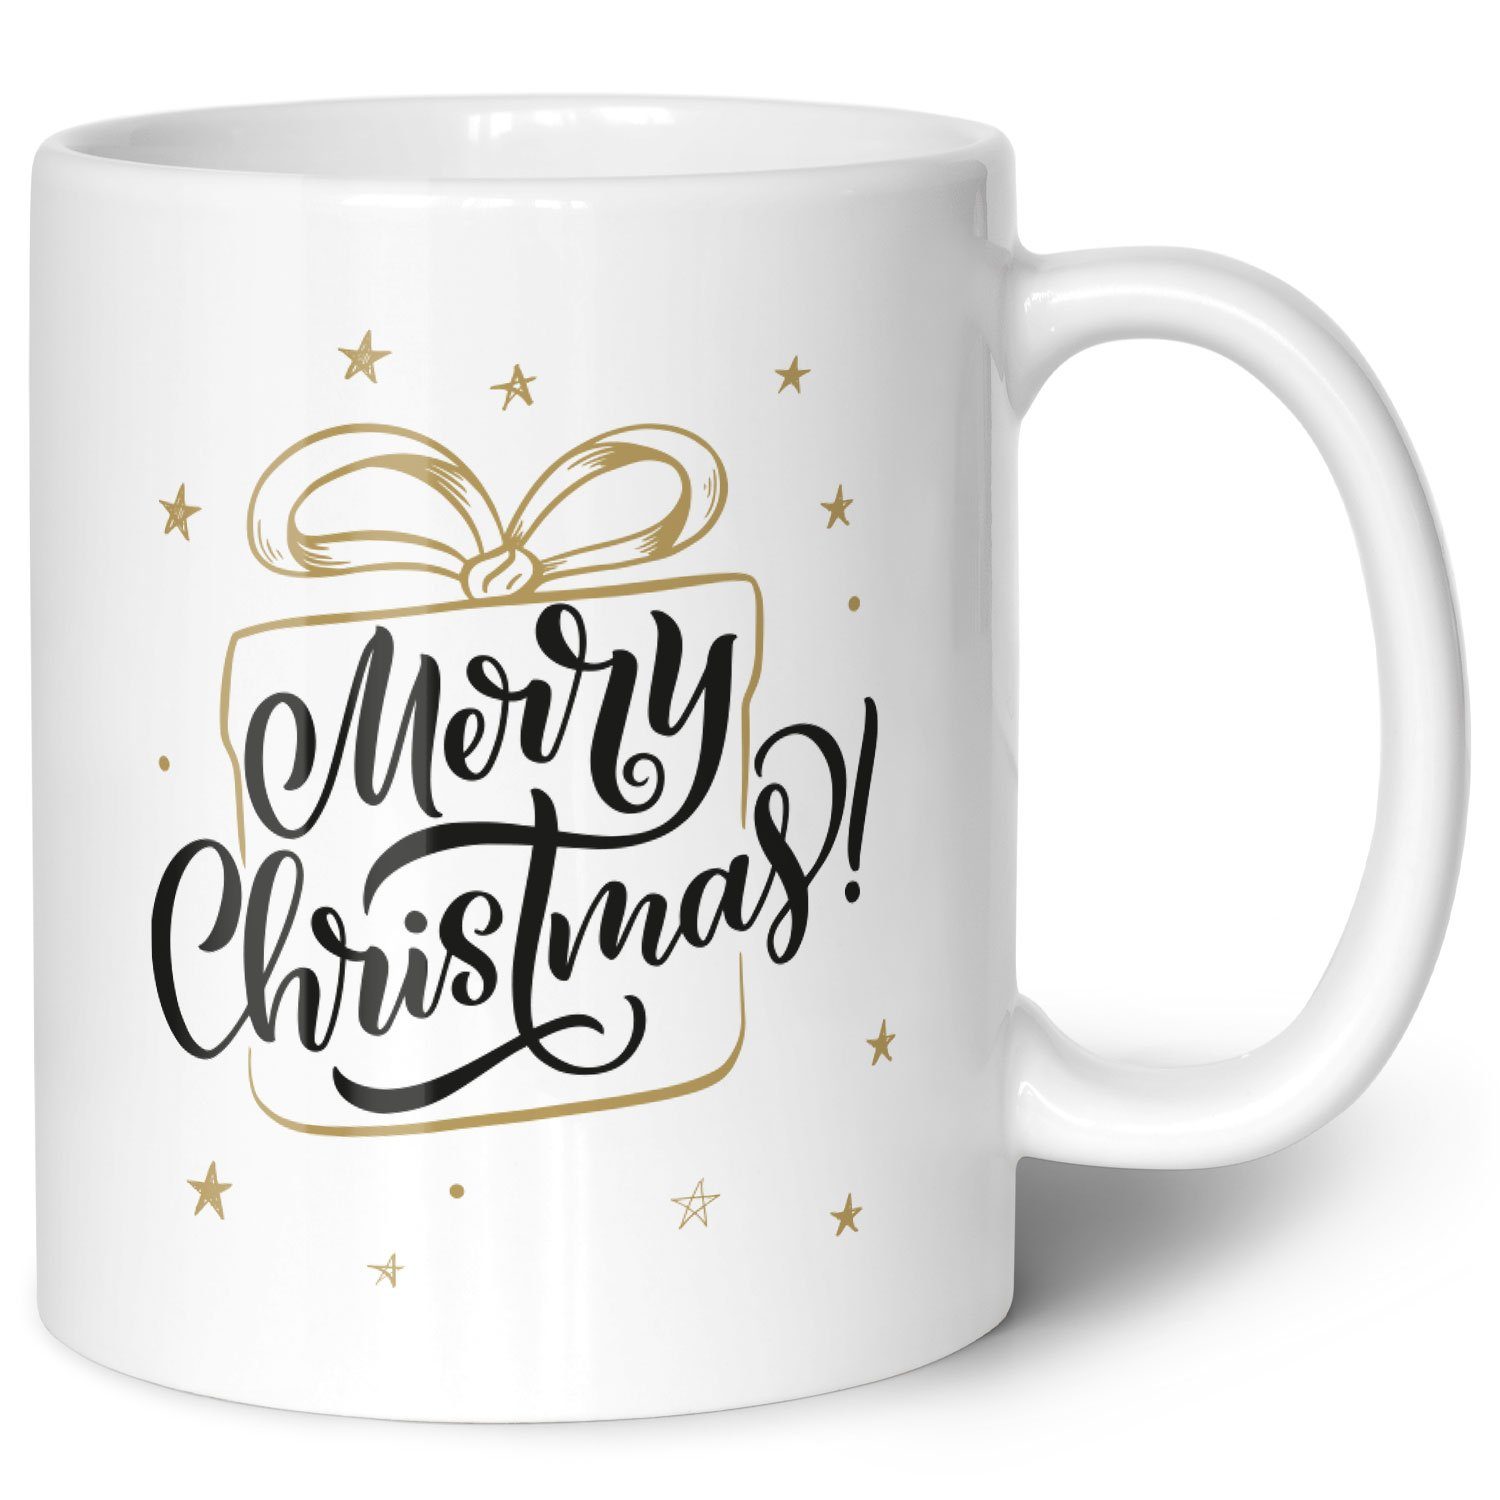 GRAVURZEILE Tasse mit Weihnachtsmotiv - Geschenke für Frauen & Männer zu Weihnachten, Spülmaschinenfest - Merry Christmas Geschenk - Weiß